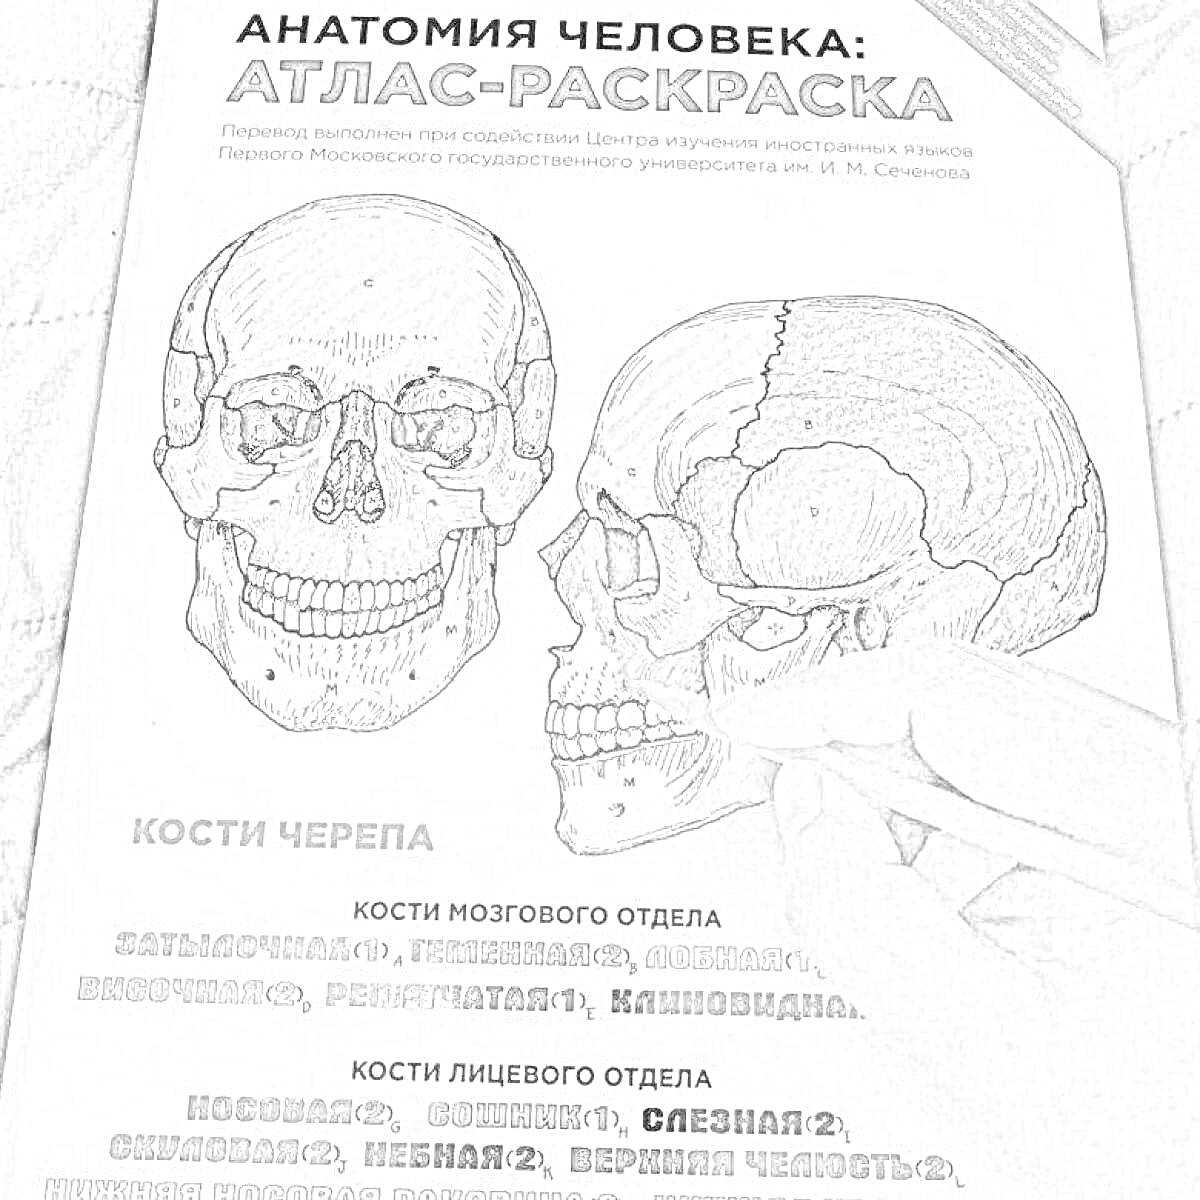 Раскраска Анатомия человека: атлас-раскраска. Изображены черепа спереди и сбоку. Подписи к элементам черепа, включая кости мозгового и лицевого отделов.